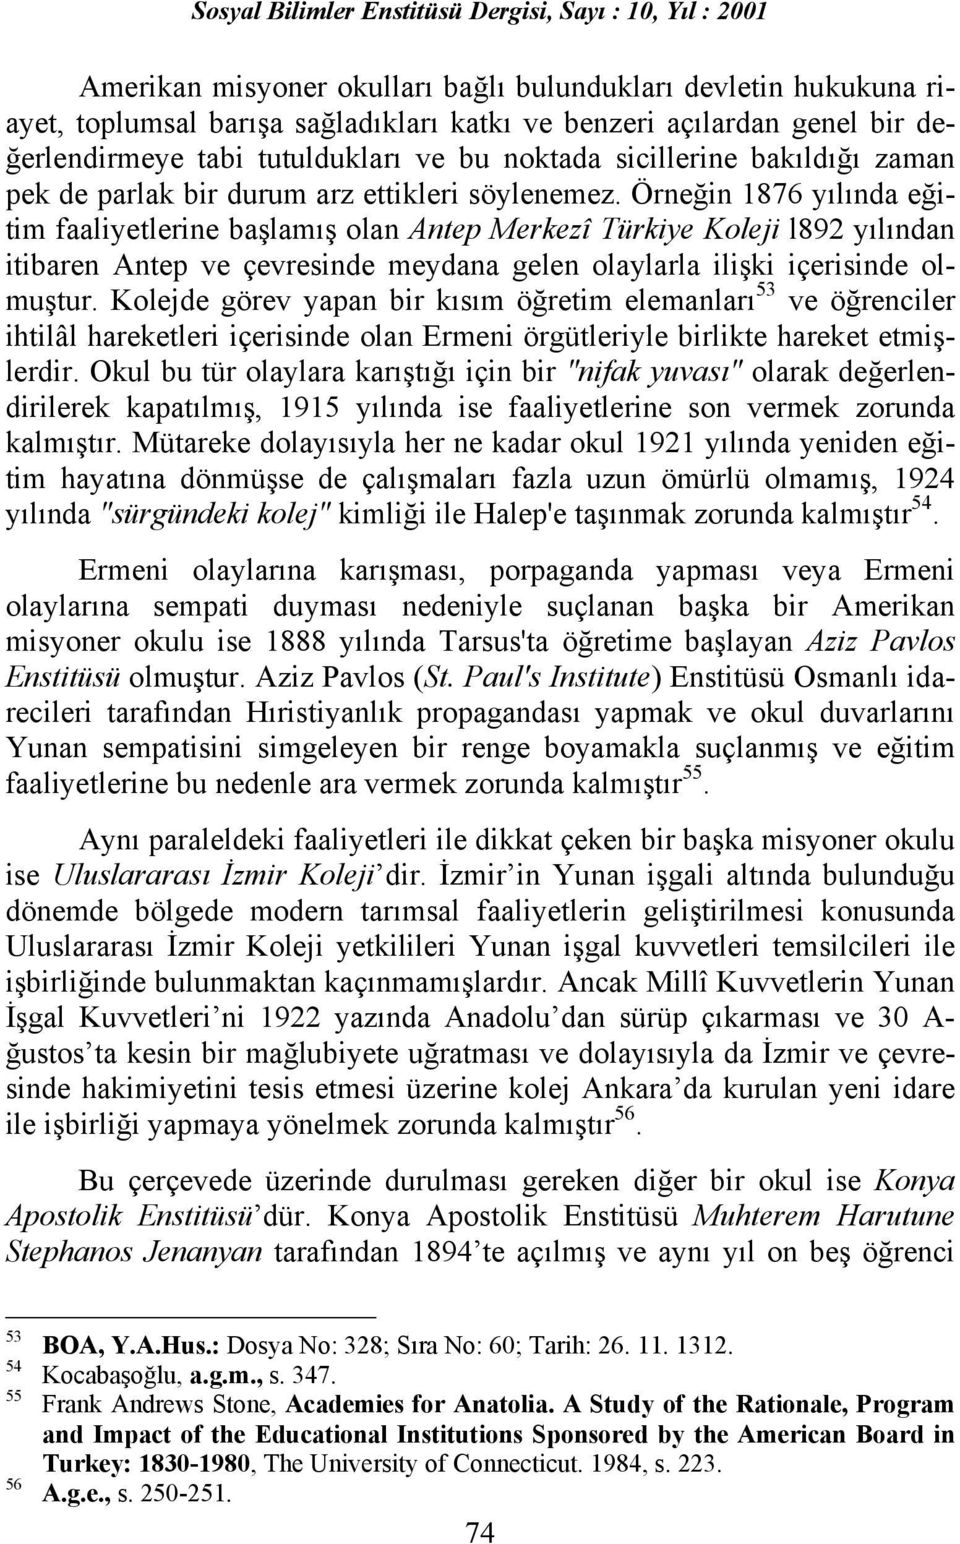 Örneğin 1876 yõlõnda eğitim faaliyetlerine başlamõş olan Antep Merkezî Türkiye Koleji l892 yõlõndan itibaren Antep ve çevresinde meydana gelen olaylarla ilişki içerisinde olmuştur.